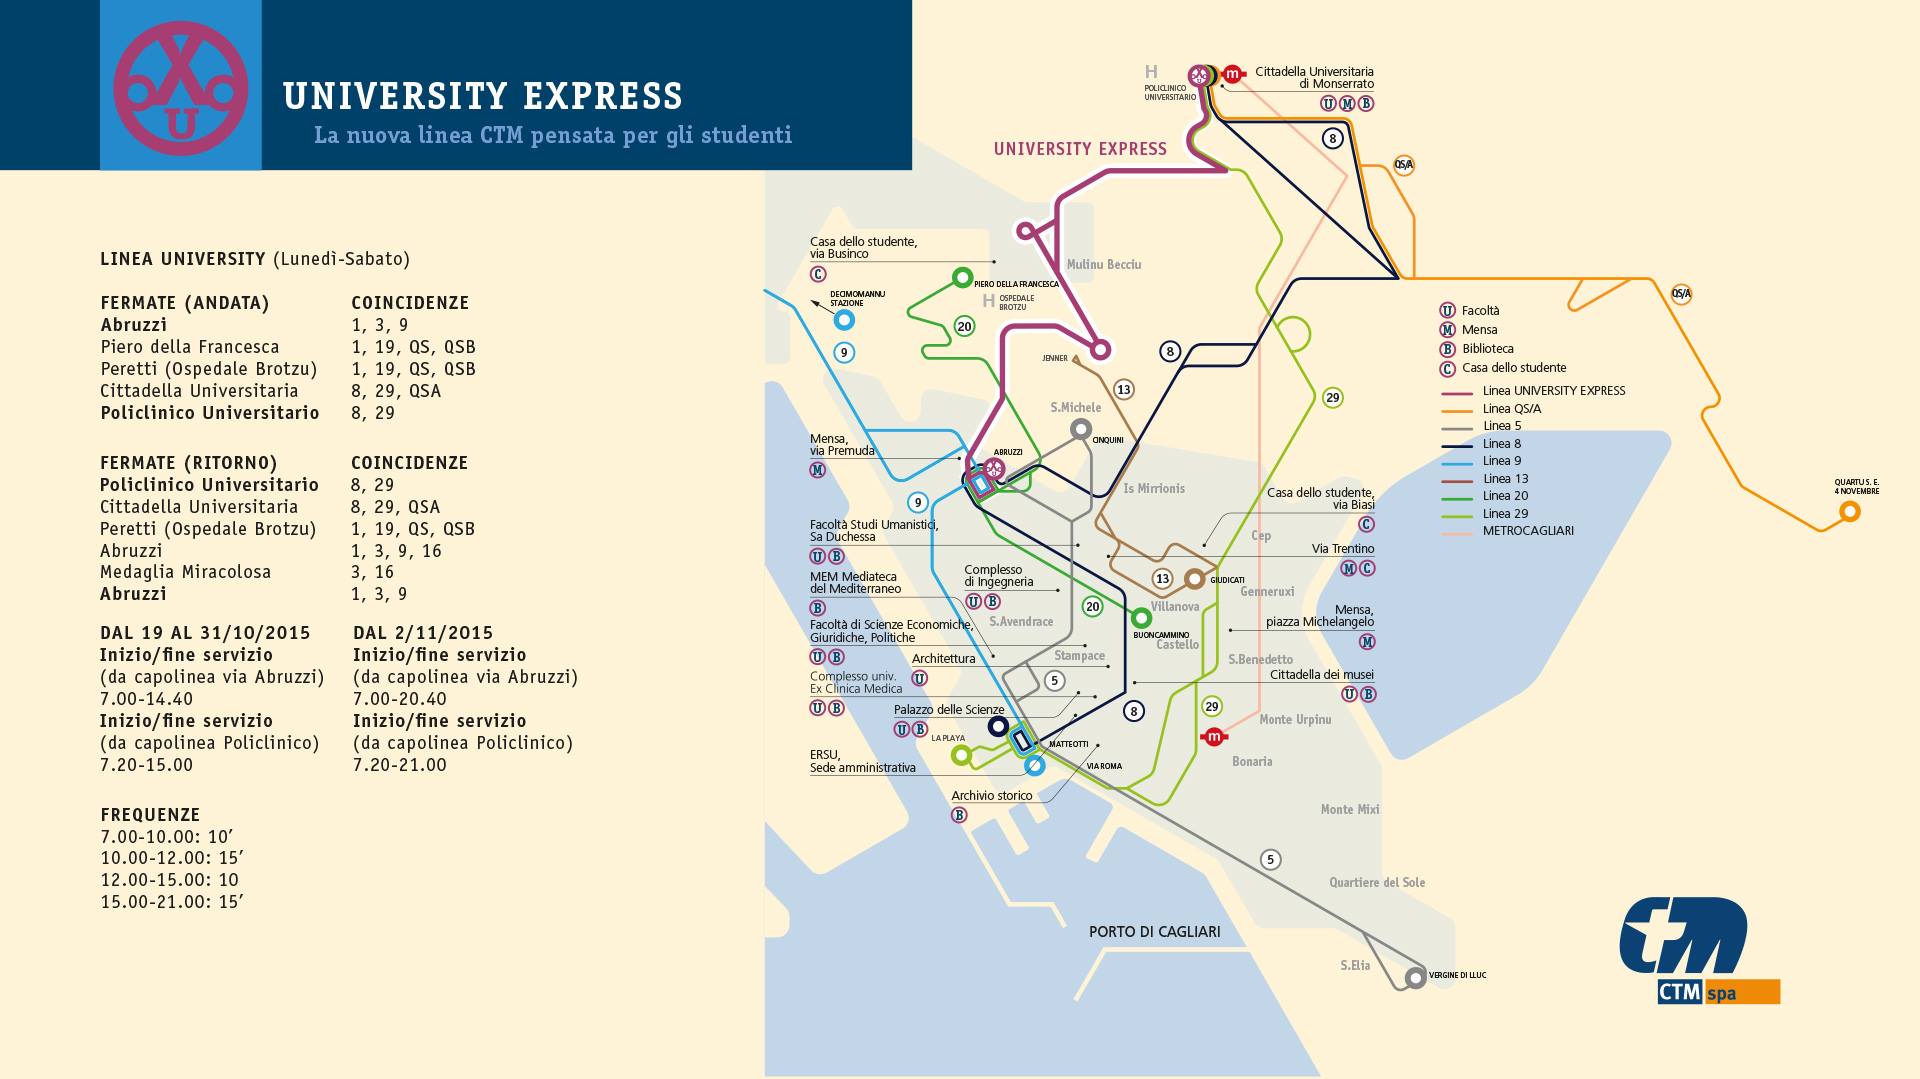 University Express la nuova linea del CTM che collega Cagliari alla